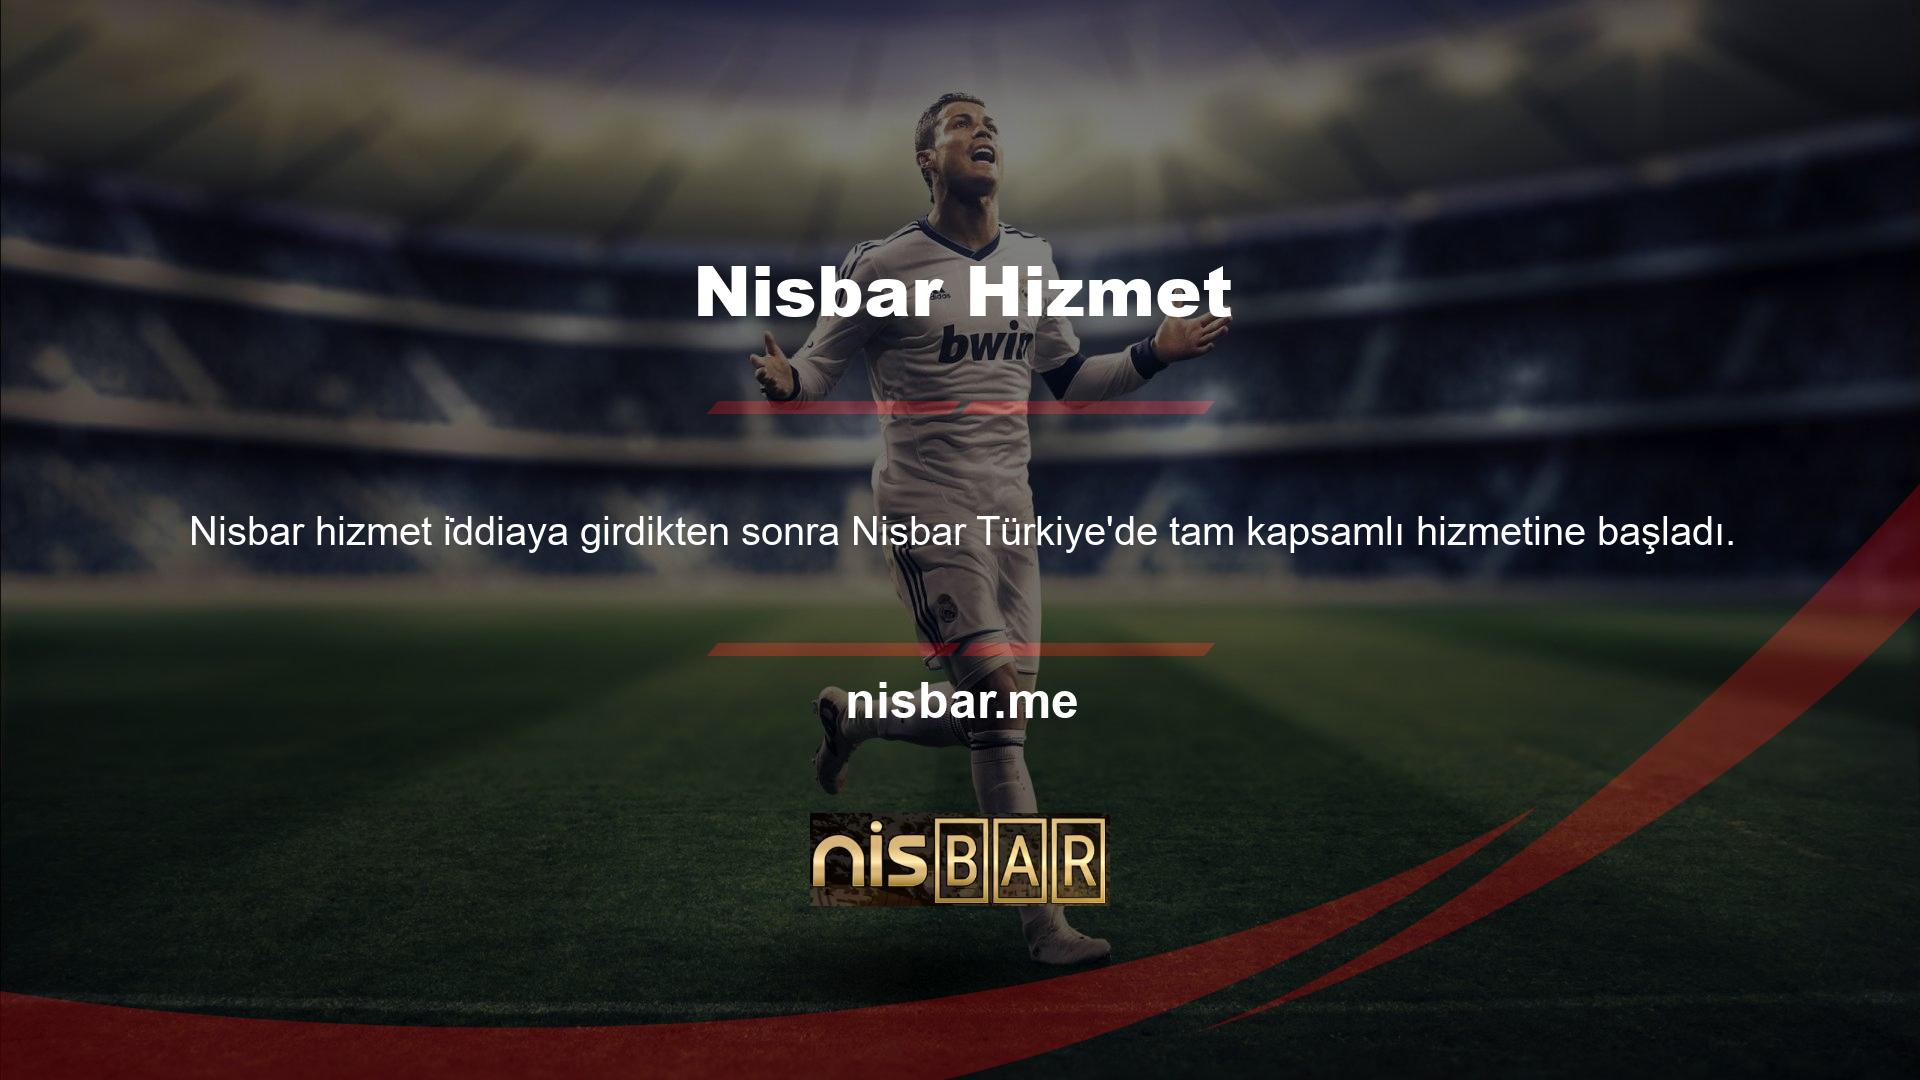 Nisbar, Türkiye'deki binlerce oyuncuyla iletişim halinde olup tüm oyuncuların sitede aktif kalması için çeşitli etkinlikler düzenlemektedir